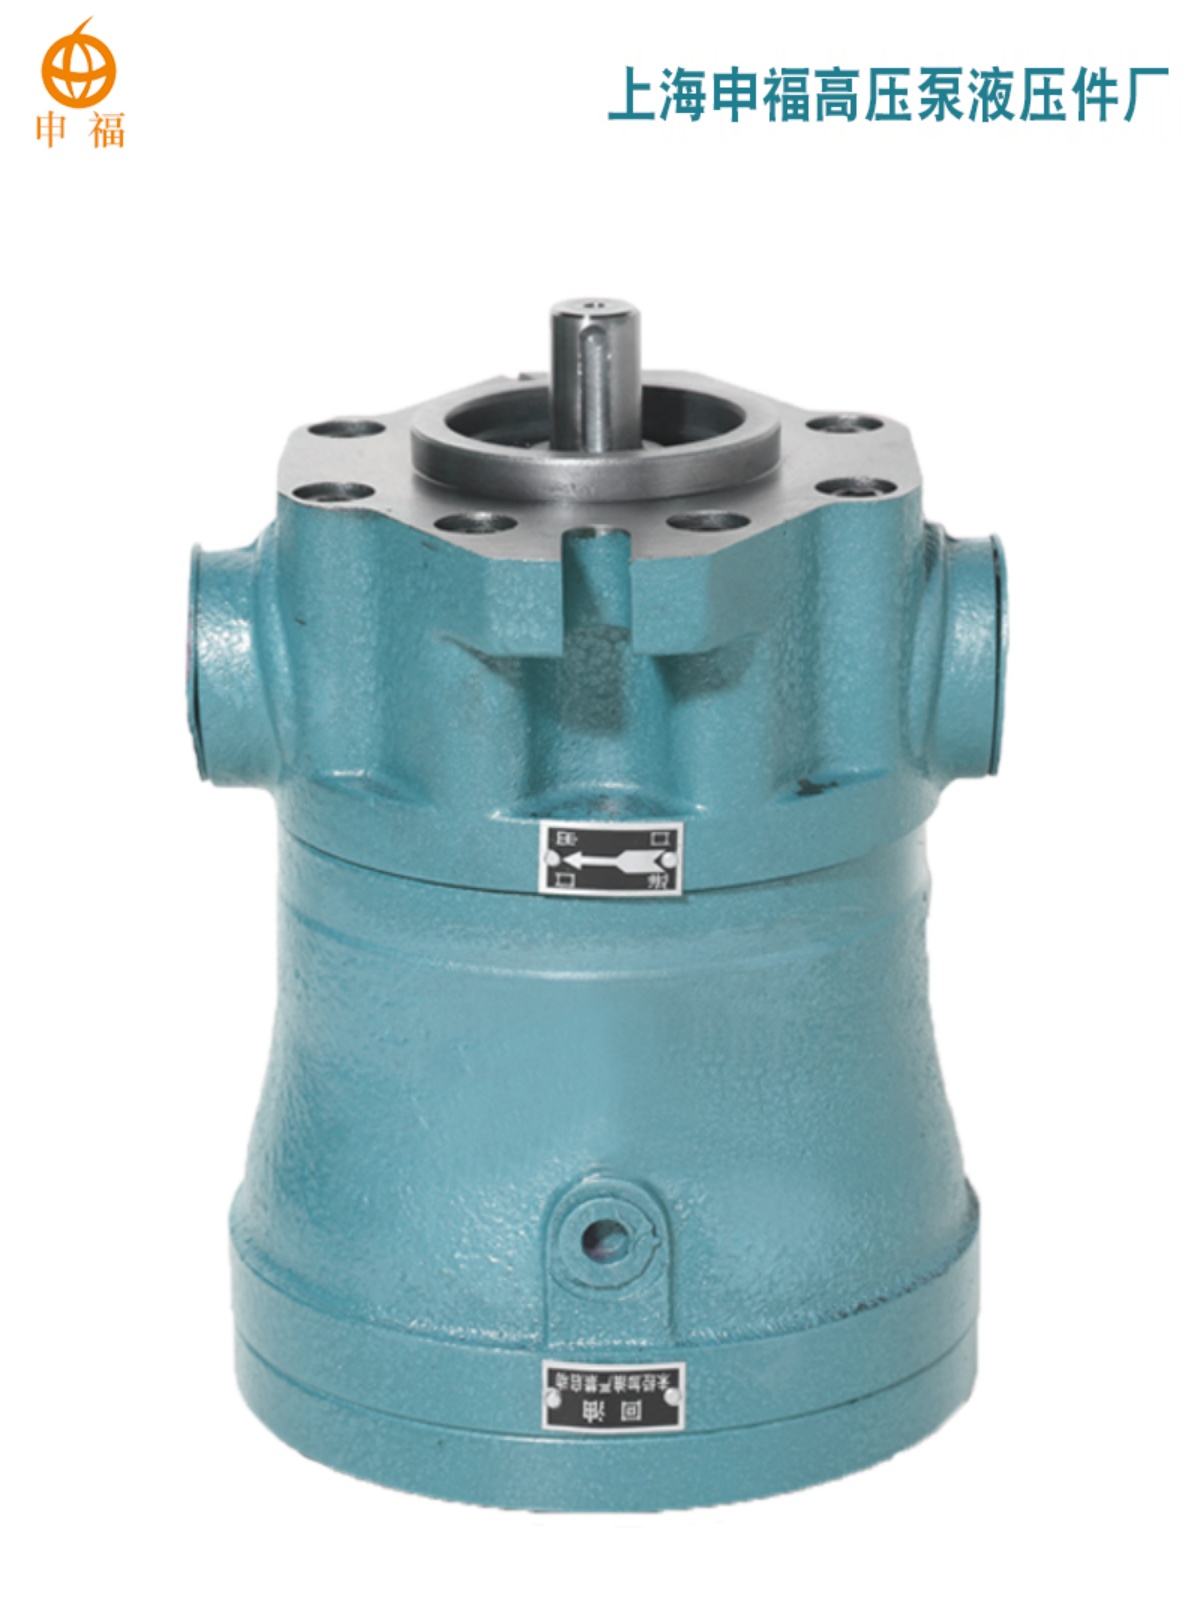 新品销售上海申福高压泵液压件厂16MCY141D轴向柱塞泵定量高压油